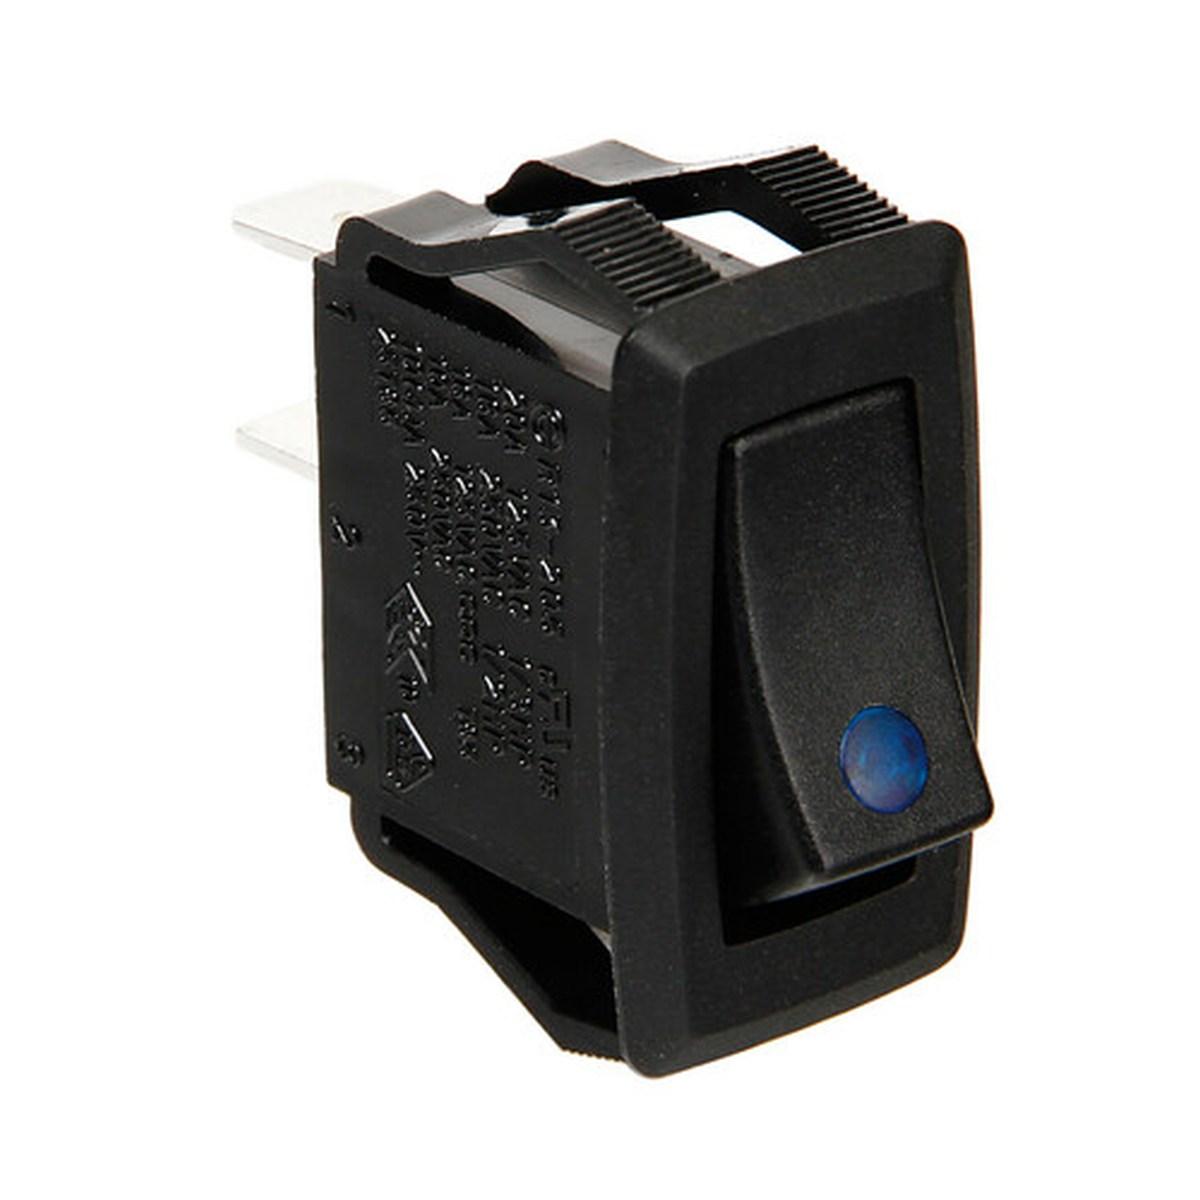 Lampa Micro interruttore con spia a Led - 12/24V - Blu 45540